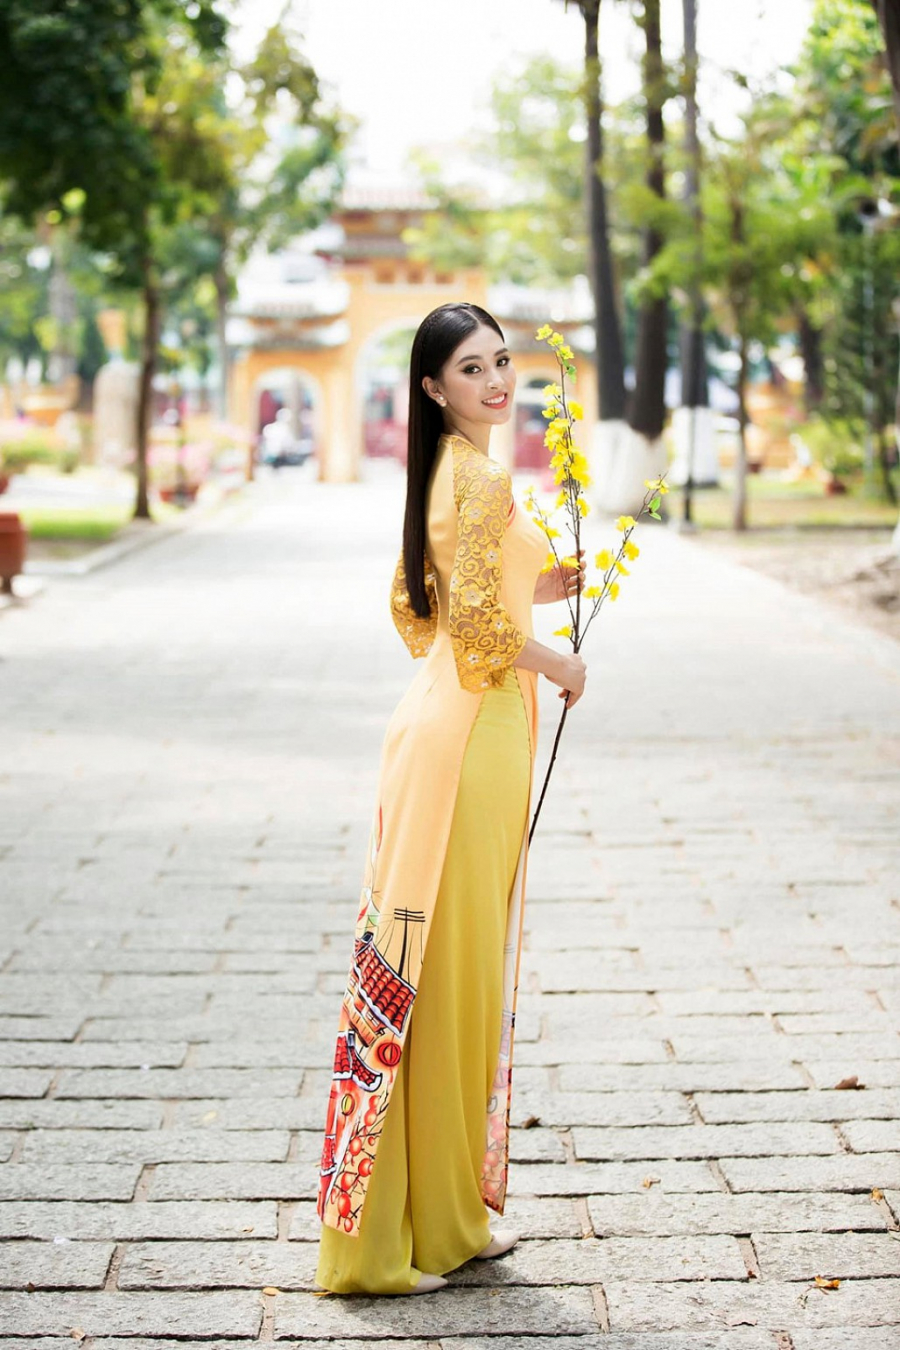 Vóc dáng thanh mảnh và mái tóc dài giúp Tiểu Vy được tôn vóc dáng khi diện đồ Tết truyền thống. Cô cũng từng là một trong những thí sinh trình diễn áo dài đẹp nhất khi đi thi Hoa hậu Việt Nam 2018.    